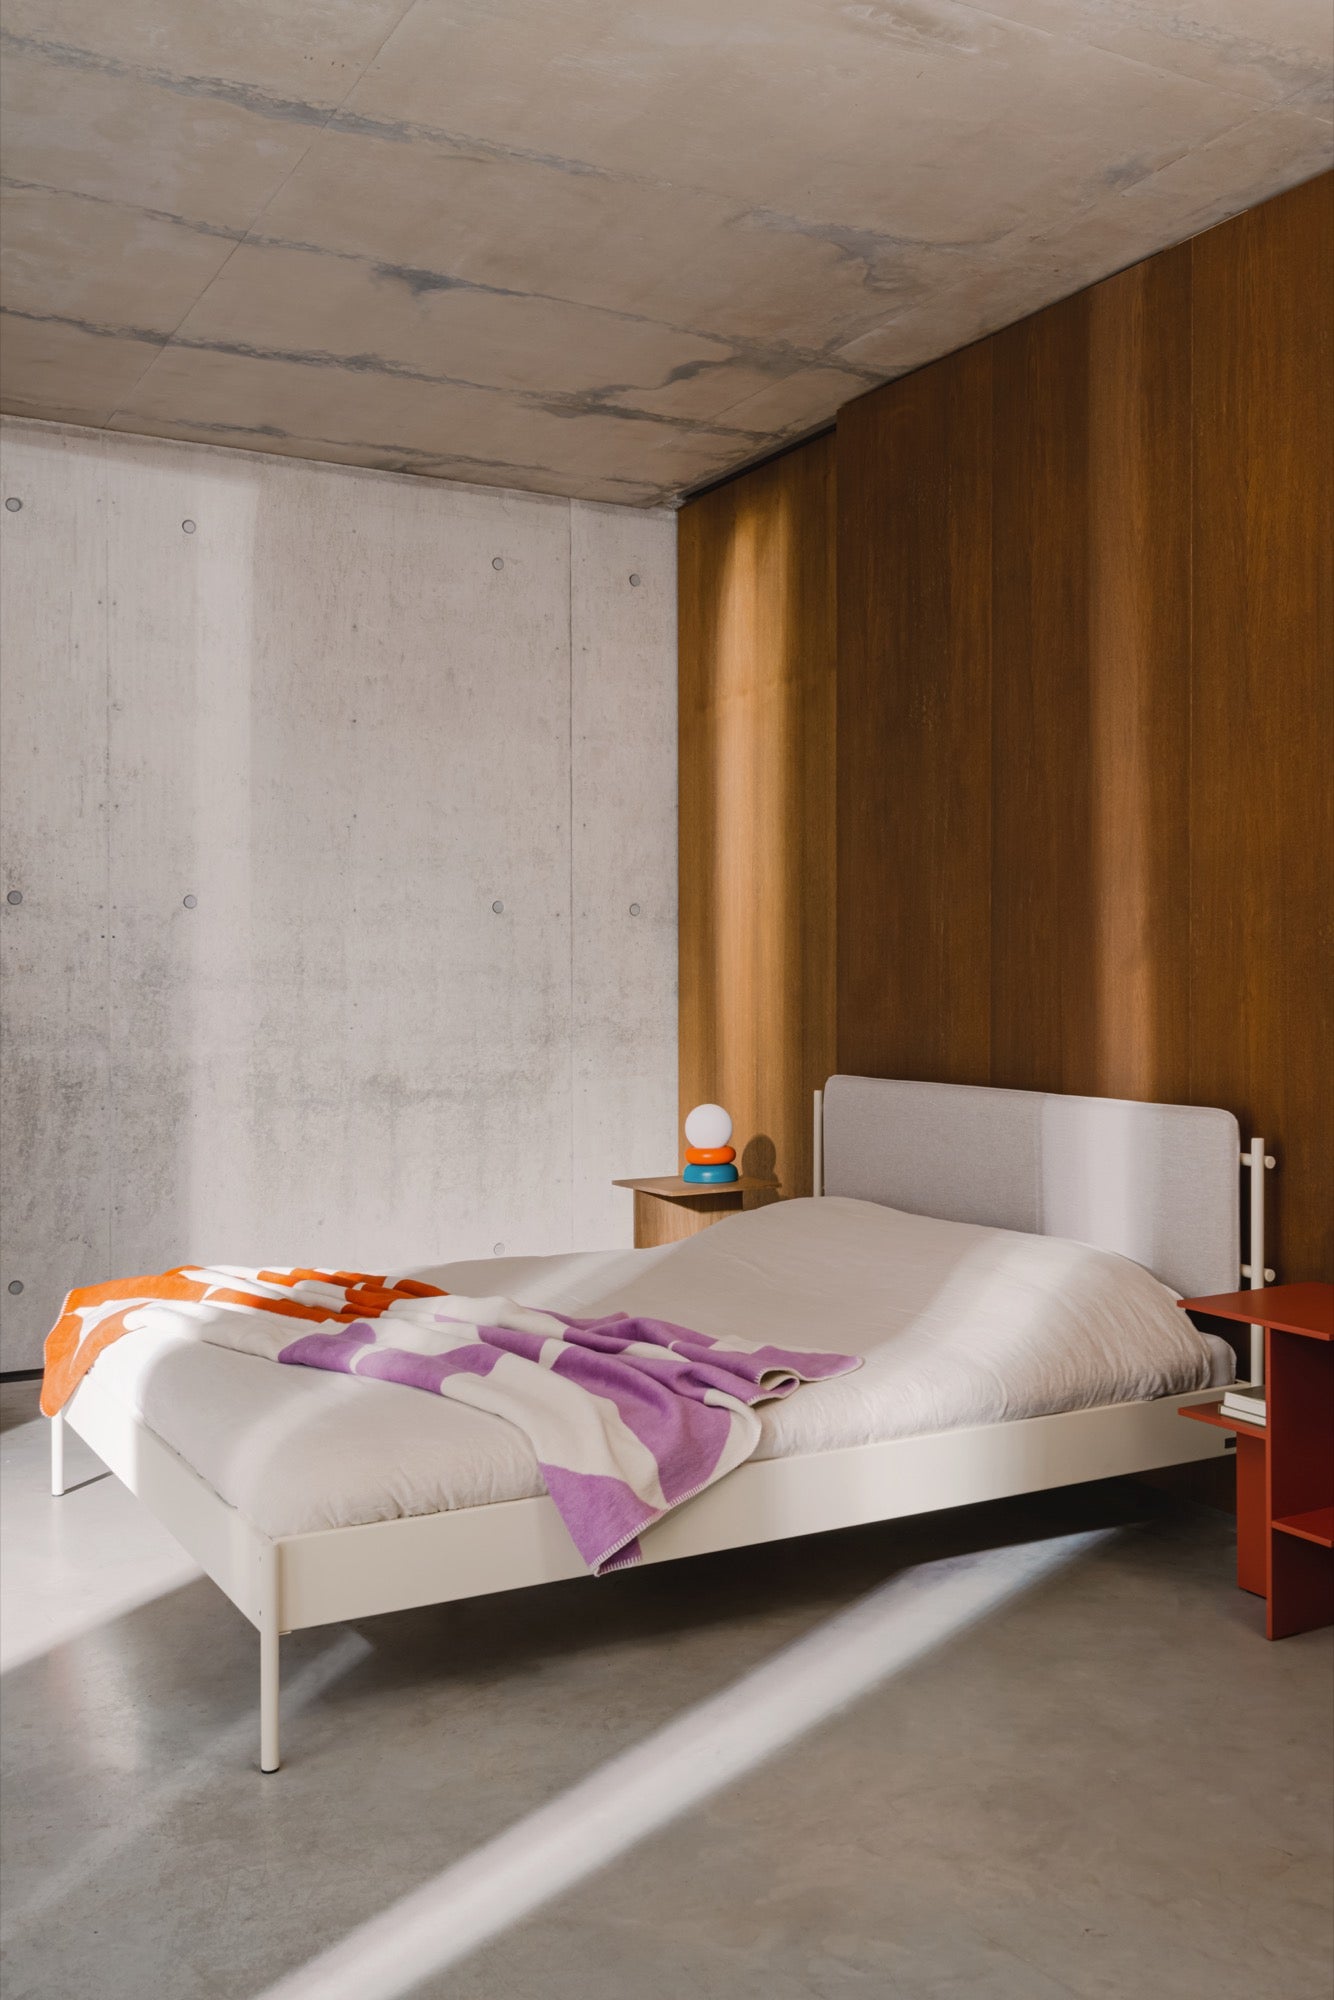 bedroom beds beige indoor new-arrivals lamps nightstands orange terracotta throws violet 